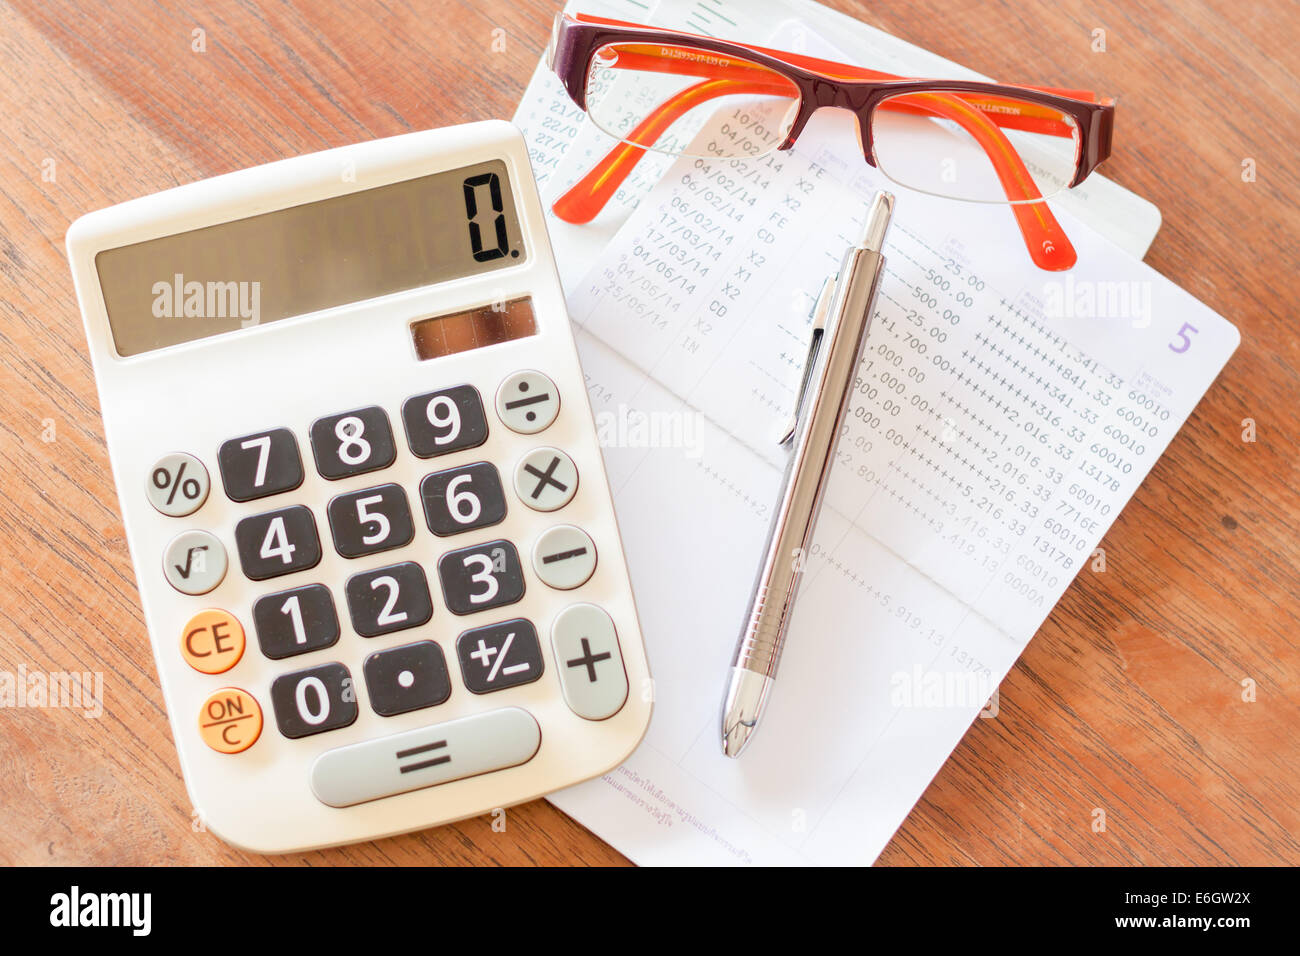 Vista superiore della calcolatrice, penna, occhiali e conto bancario libretto, stock photo Foto Stock